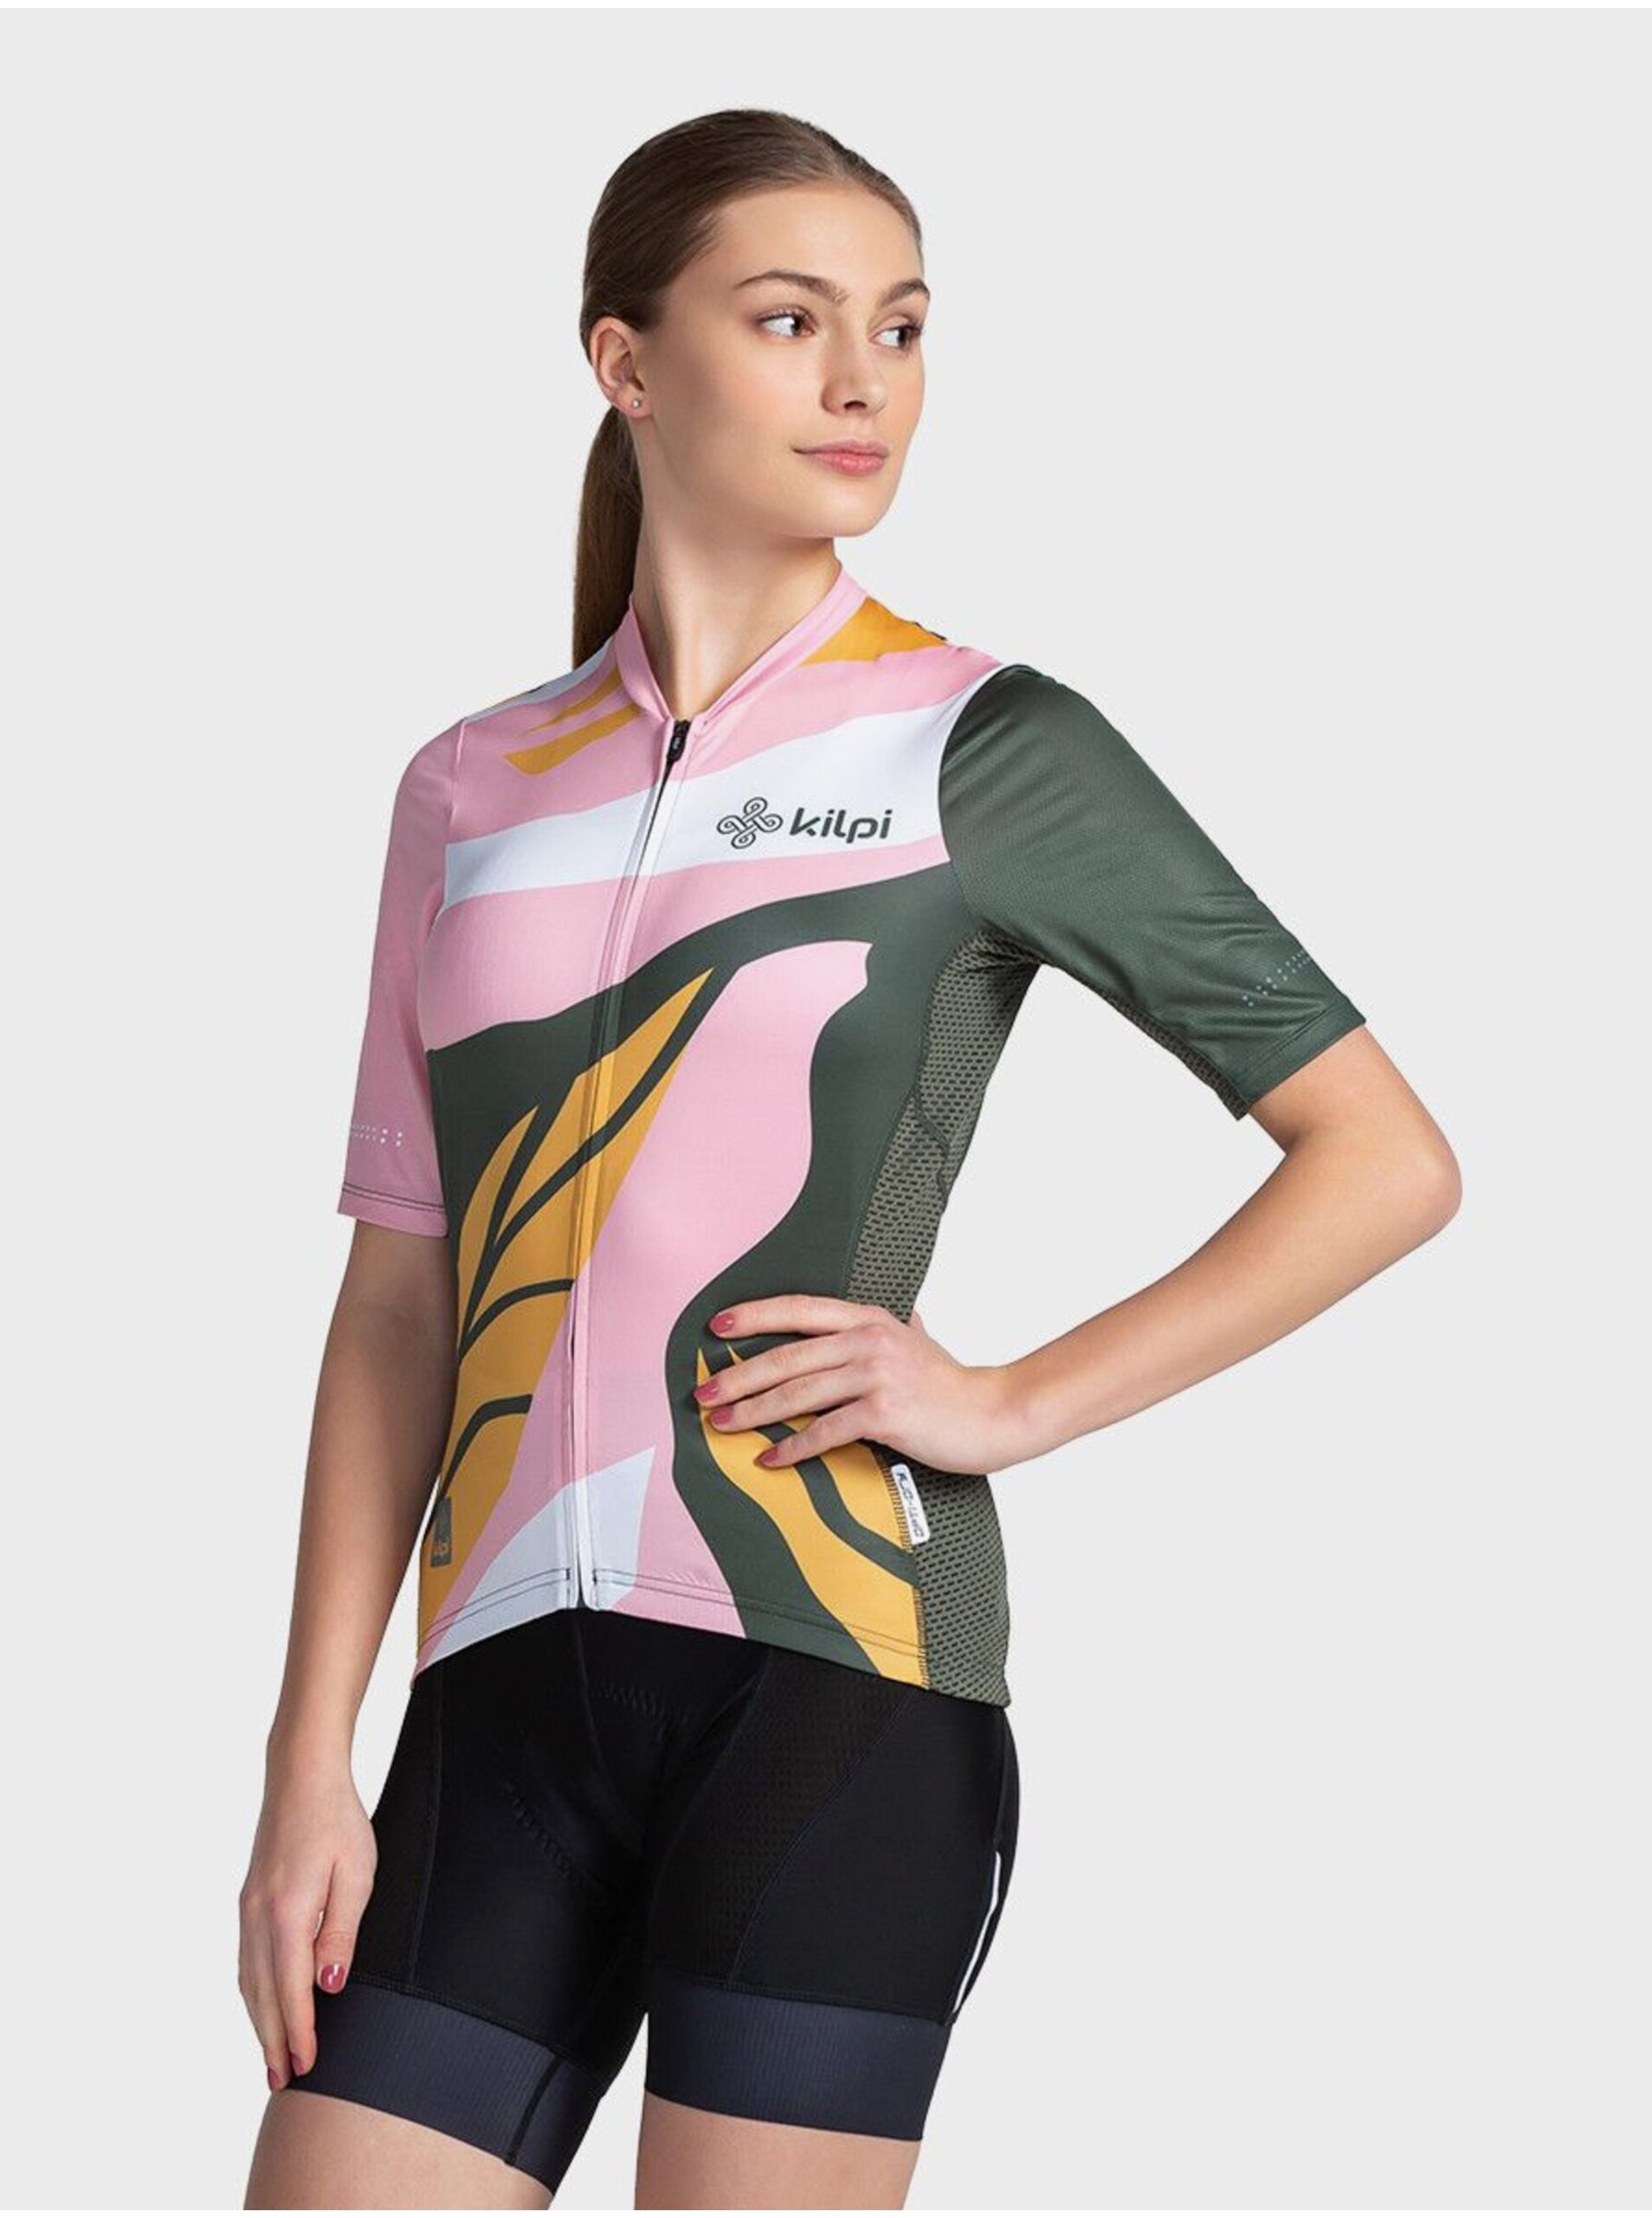 Lacno Zeleno-ružové dámske športové tričko na zips Kilpi RITAEL